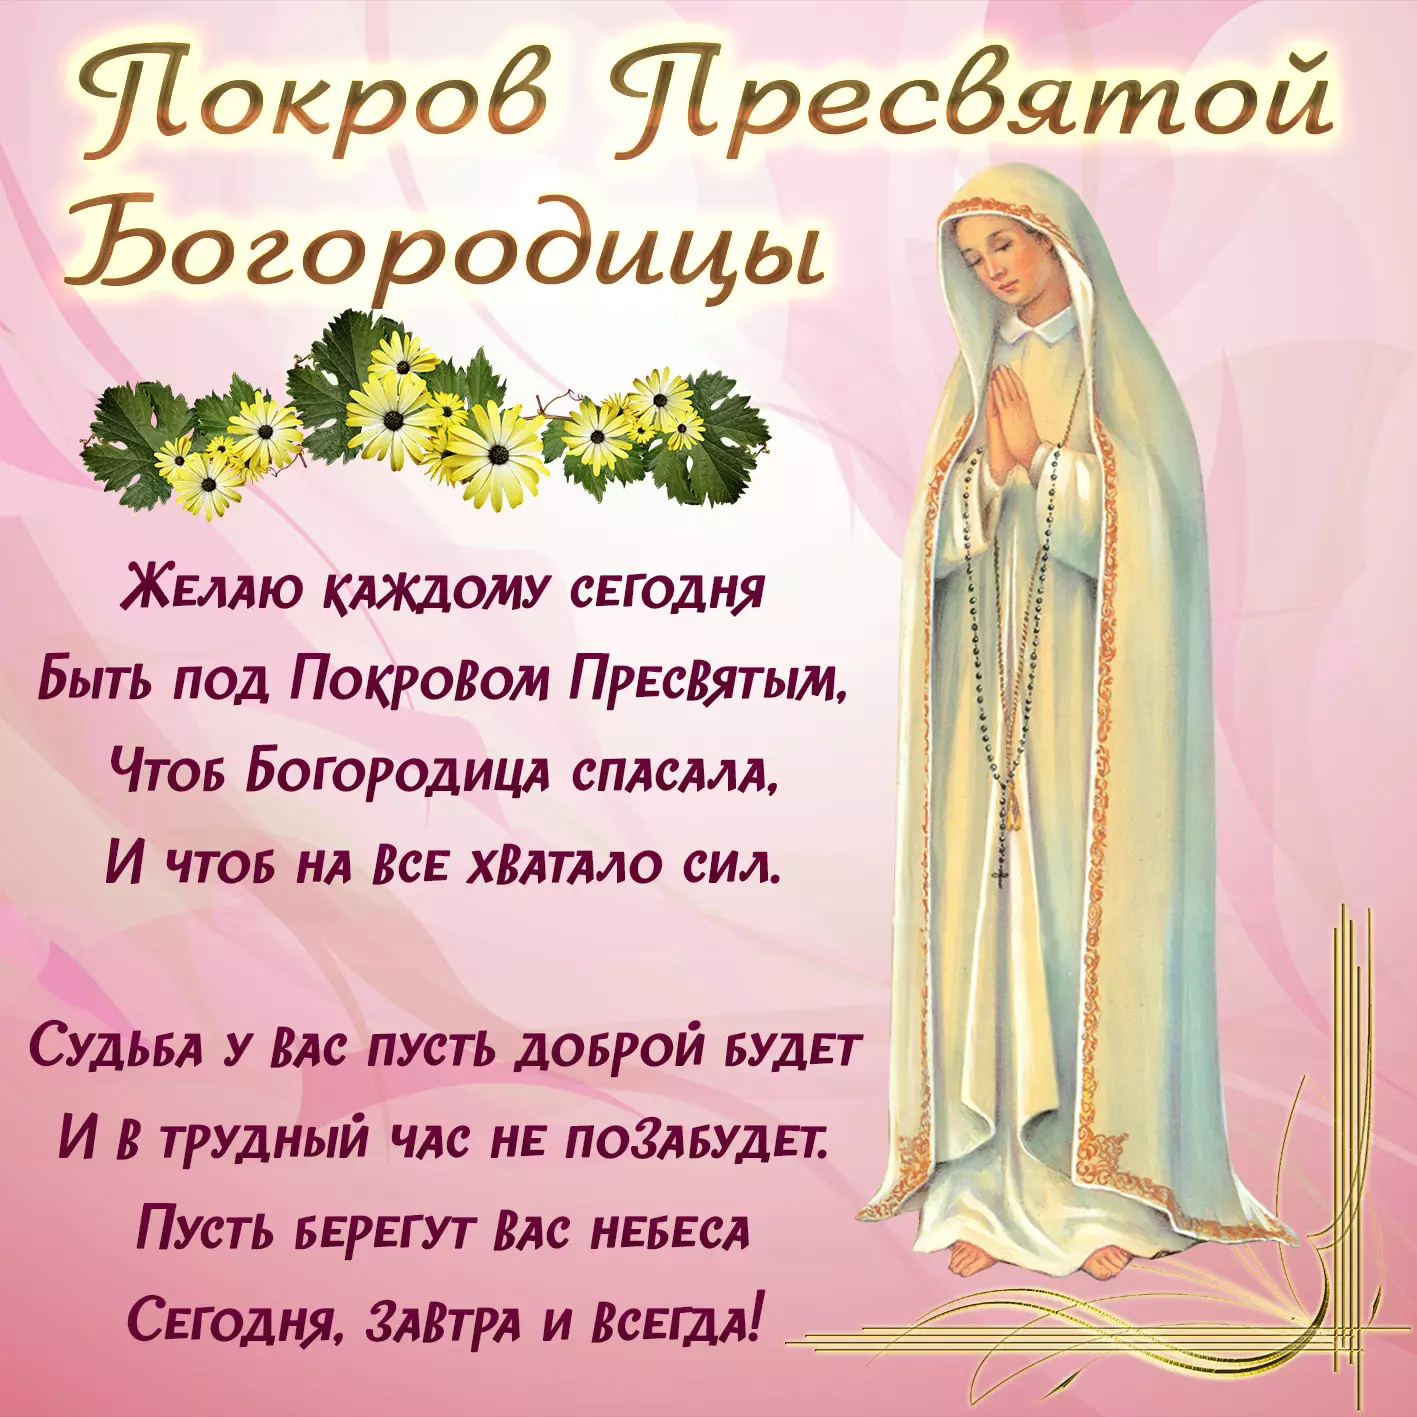 Светлые поздравления от души 14 октября в Покров Пресвятой Богородицы в прозе